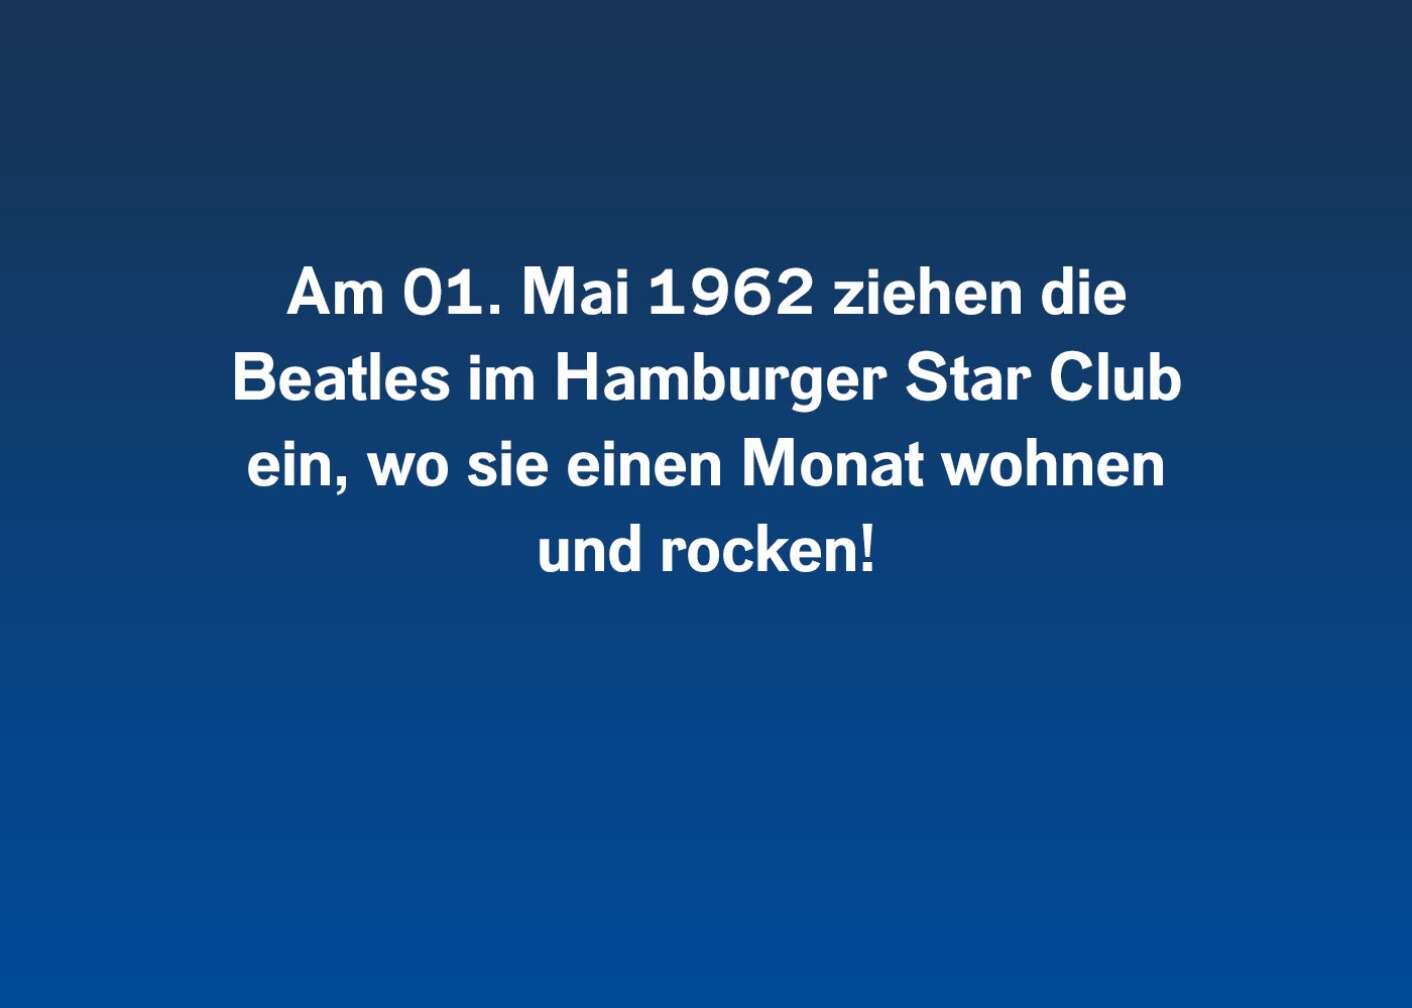 Am 01. Mai 1962 ziehen die Beatles im Hamburger Star Club ein, wo sie einen Monat wohnen und rocken.